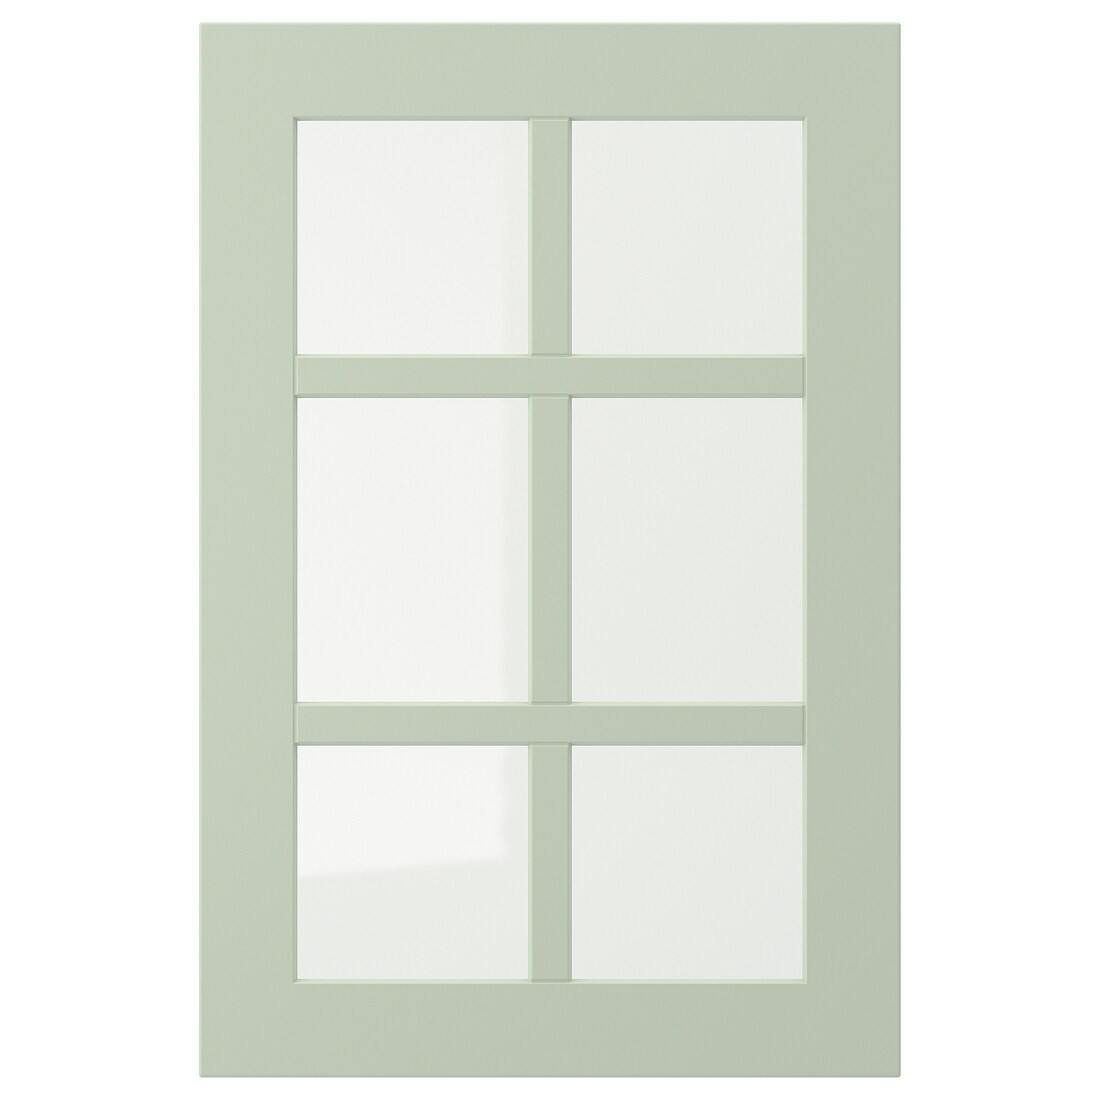 STENSUND СТЕНСУНД Скляні двері, світло-зелений, 40x60 см